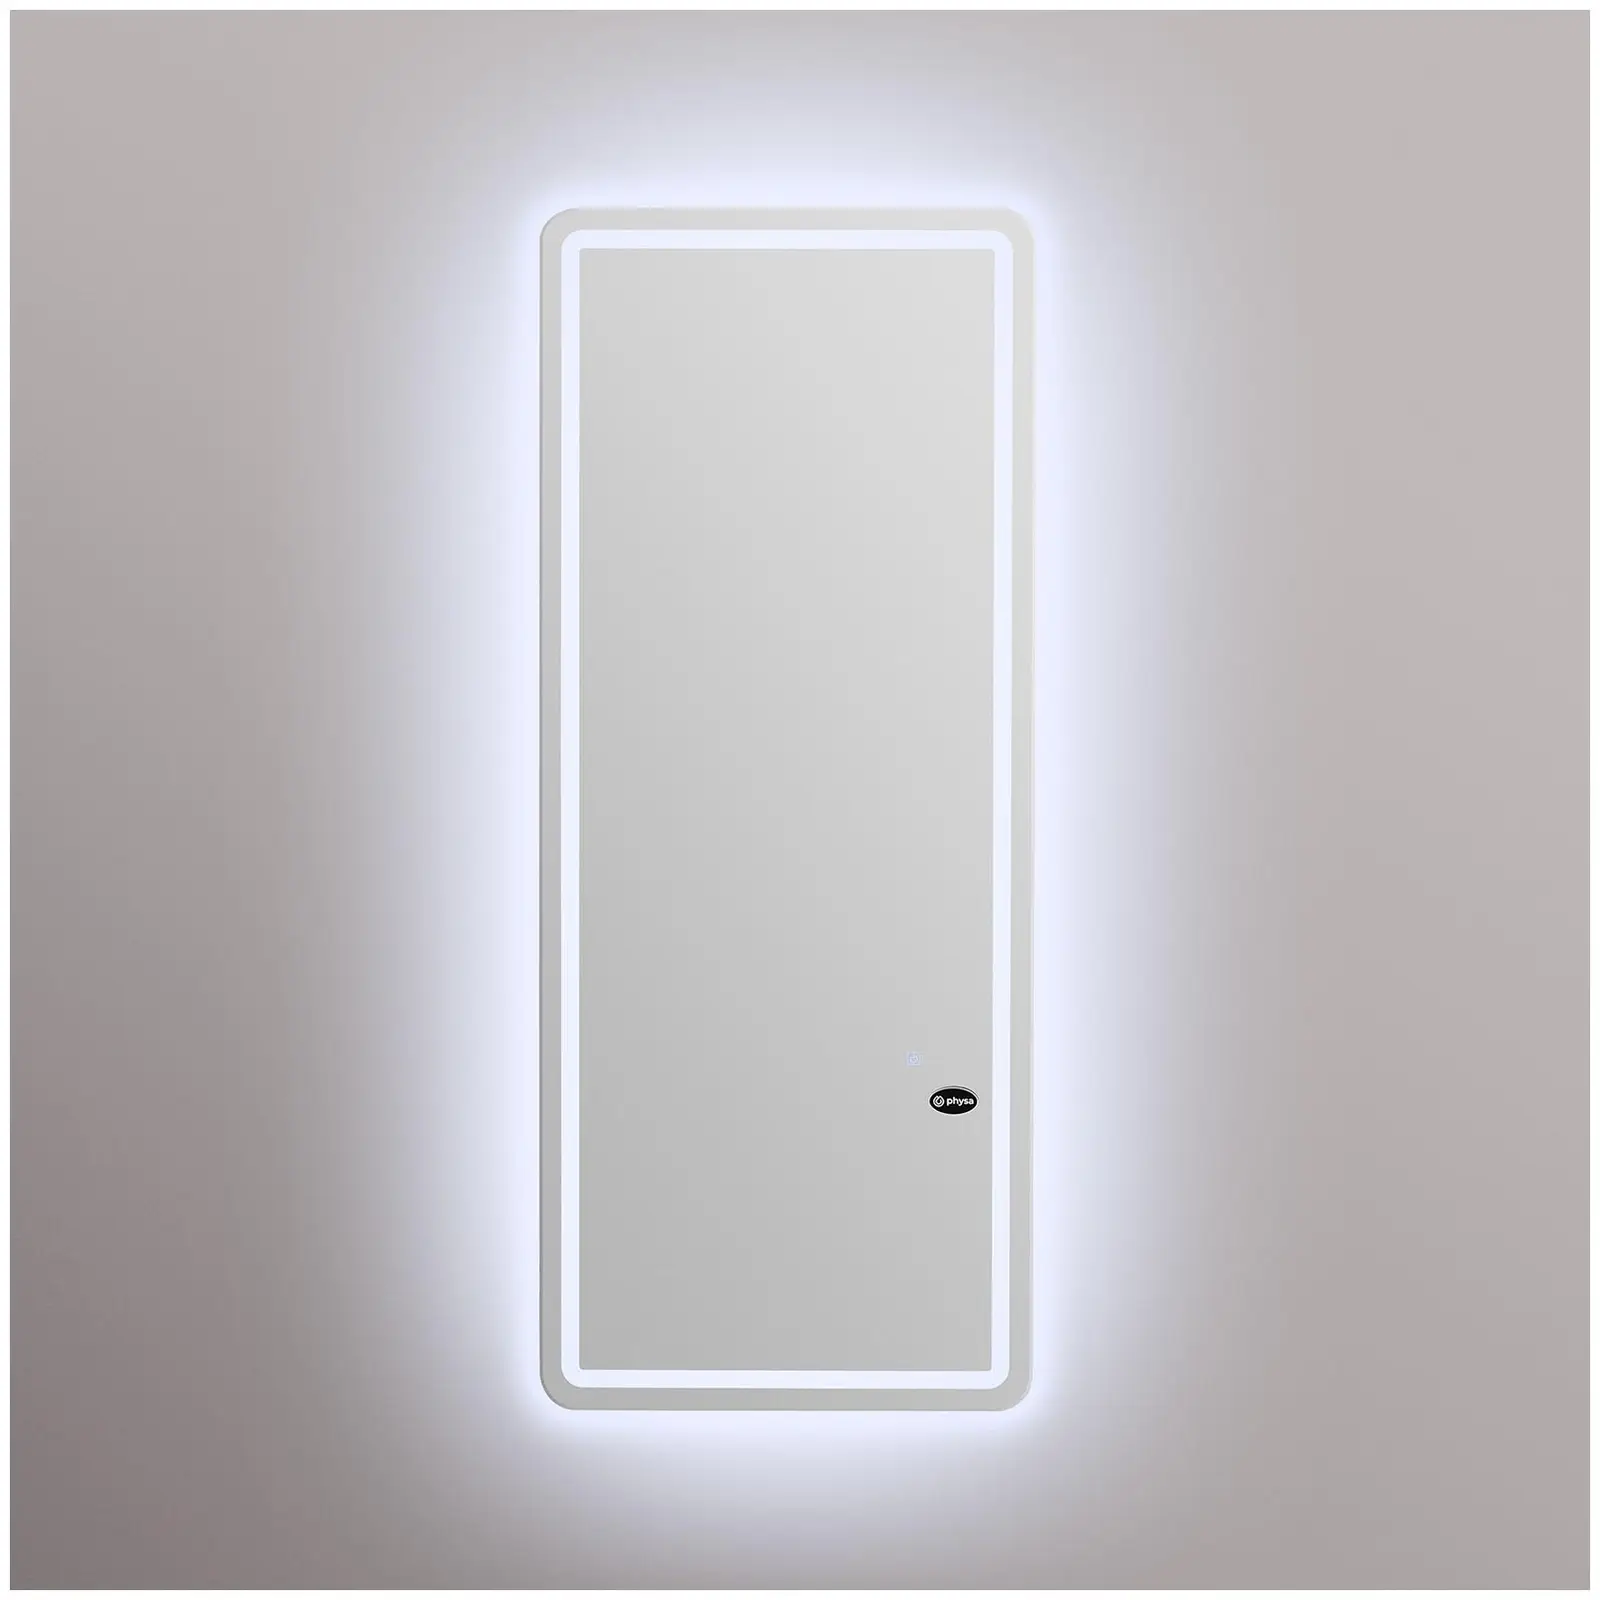 Friseur-Bedienplatz - extra flach - LED - rechteckig - 170 x 70 x 3 cm